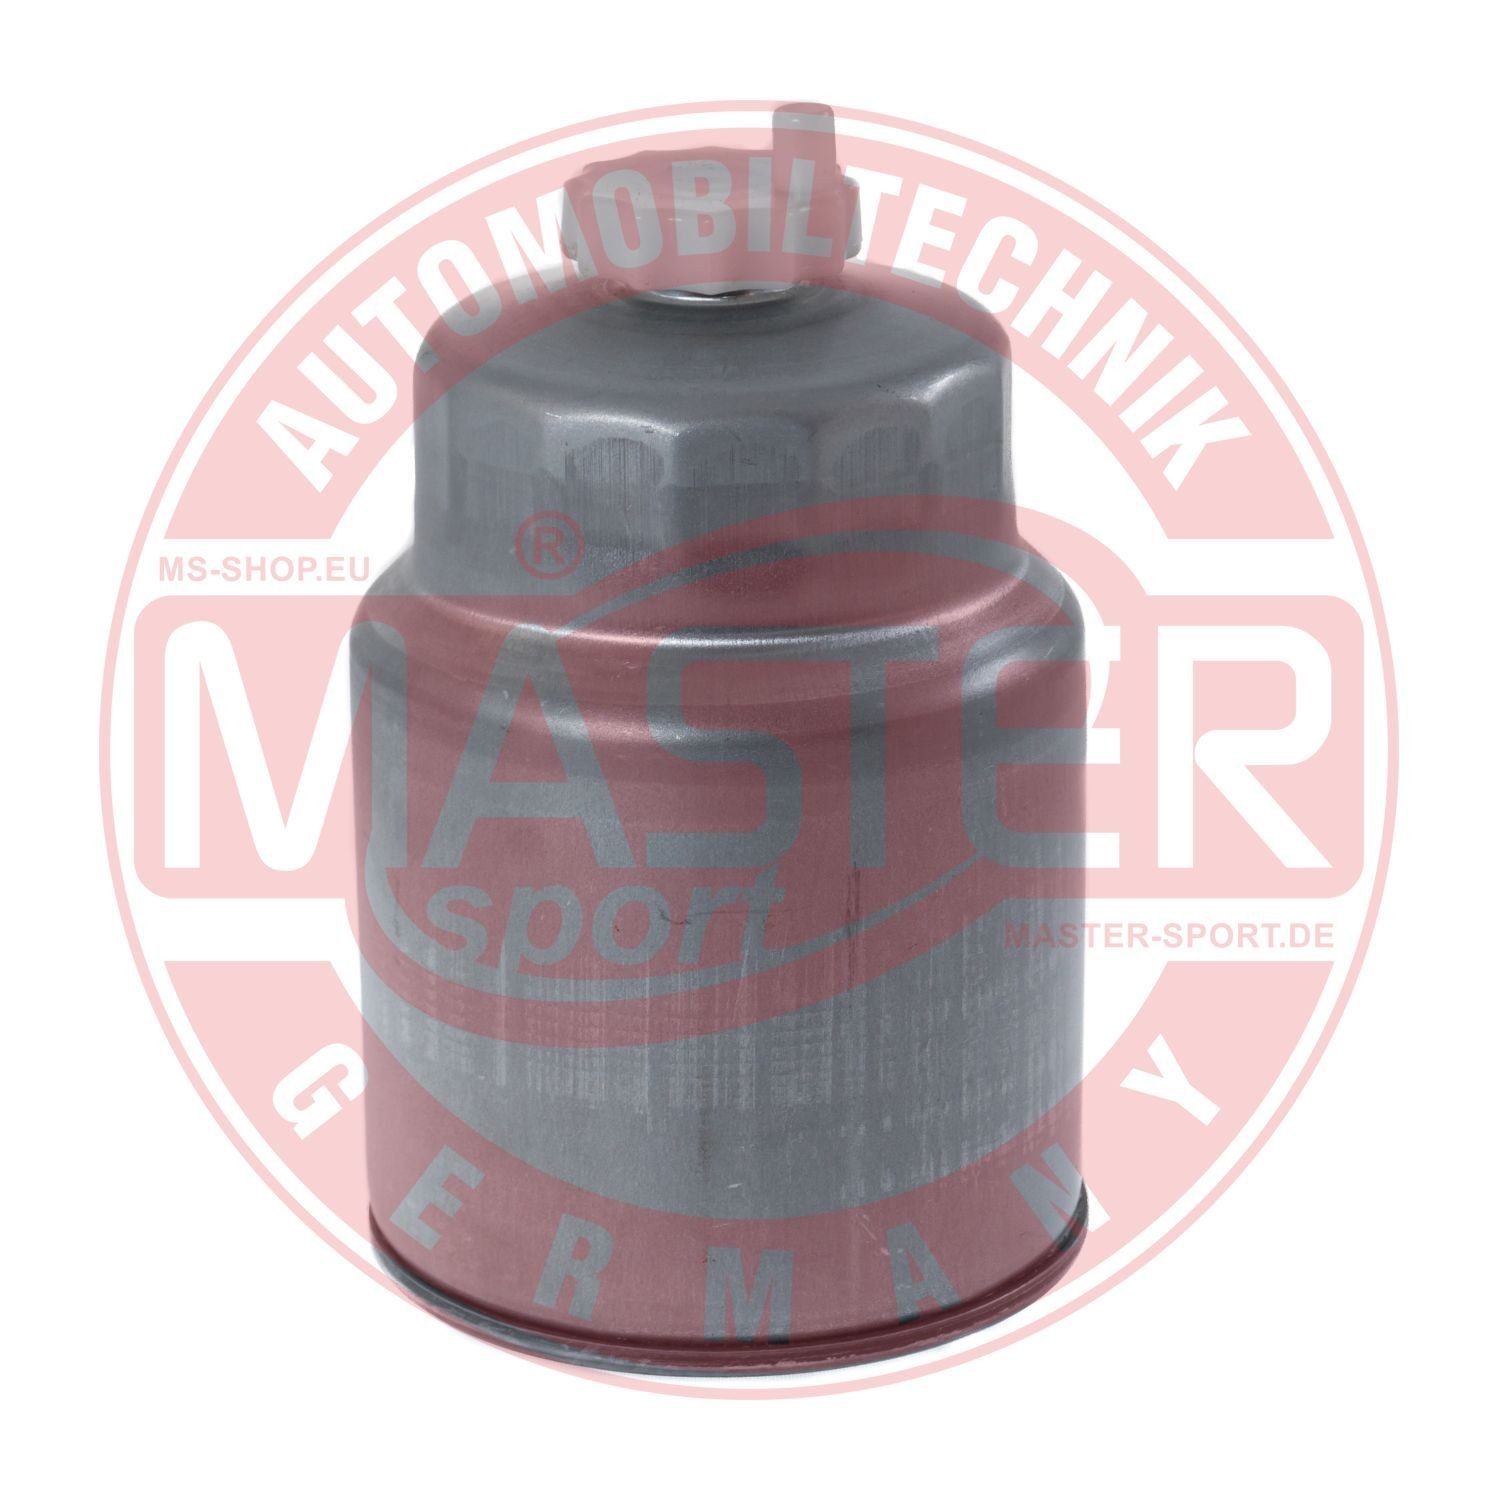 MASTER-SPORT 940/22-KF-PCS-MS Fuel filter Spin-on Filter